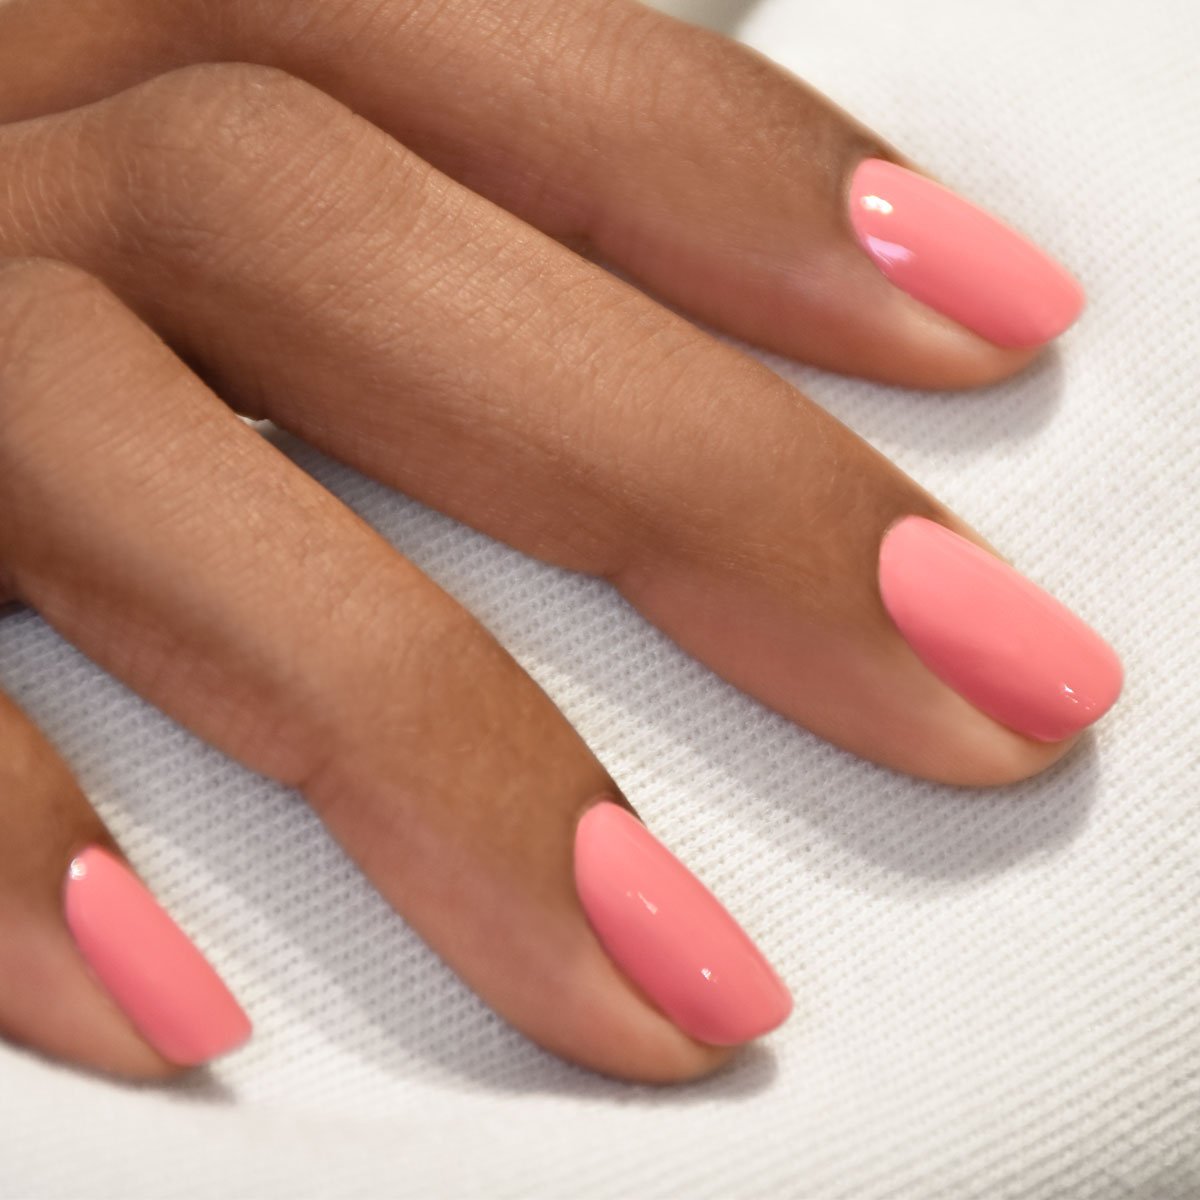 Soft pink,short, square shape SNS #707 - Macon Nail & Tan | Facebook